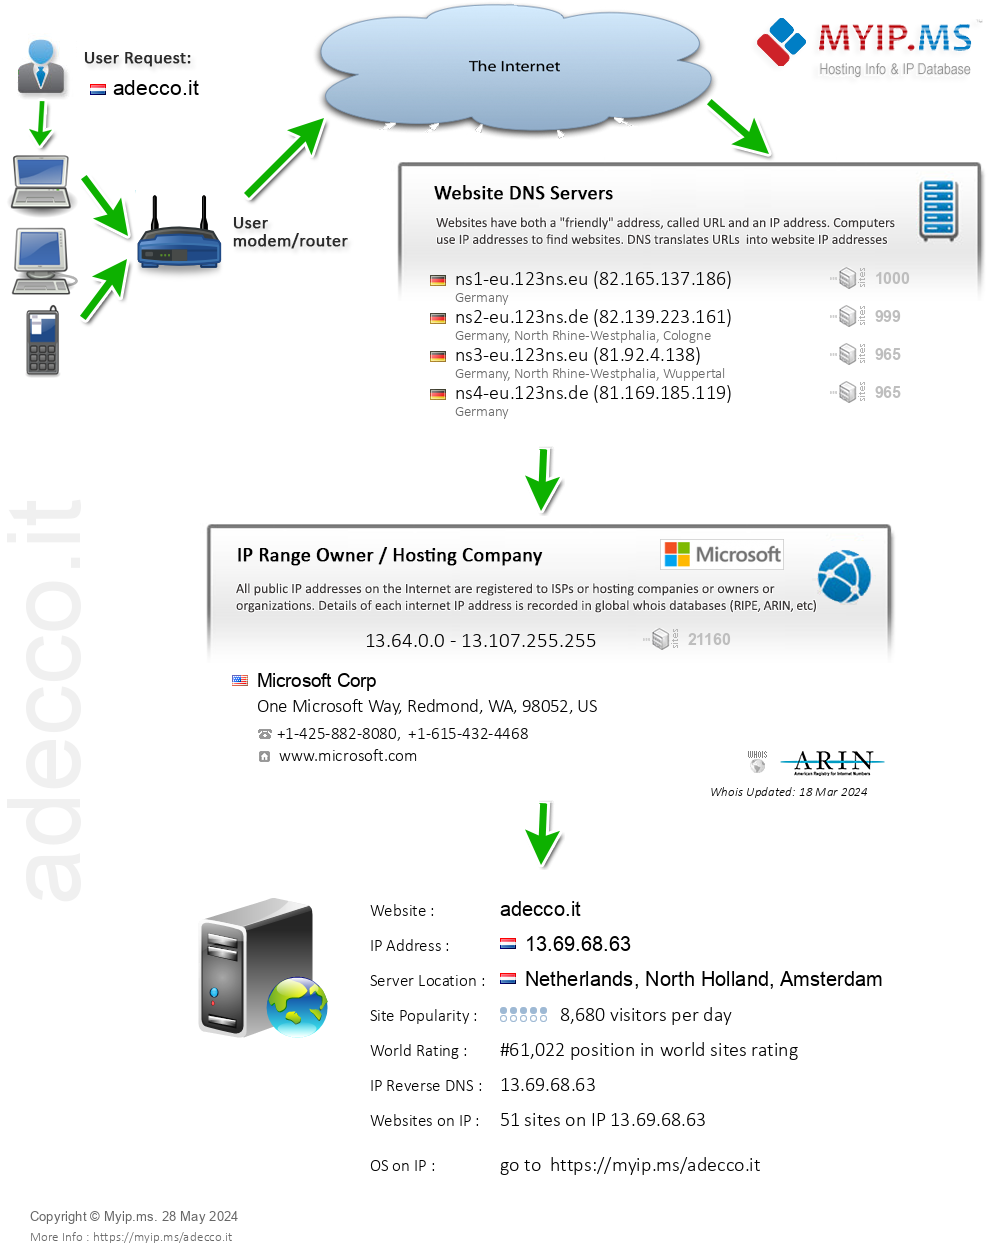 Adecco.it - Website Hosting Visual IP Diagram